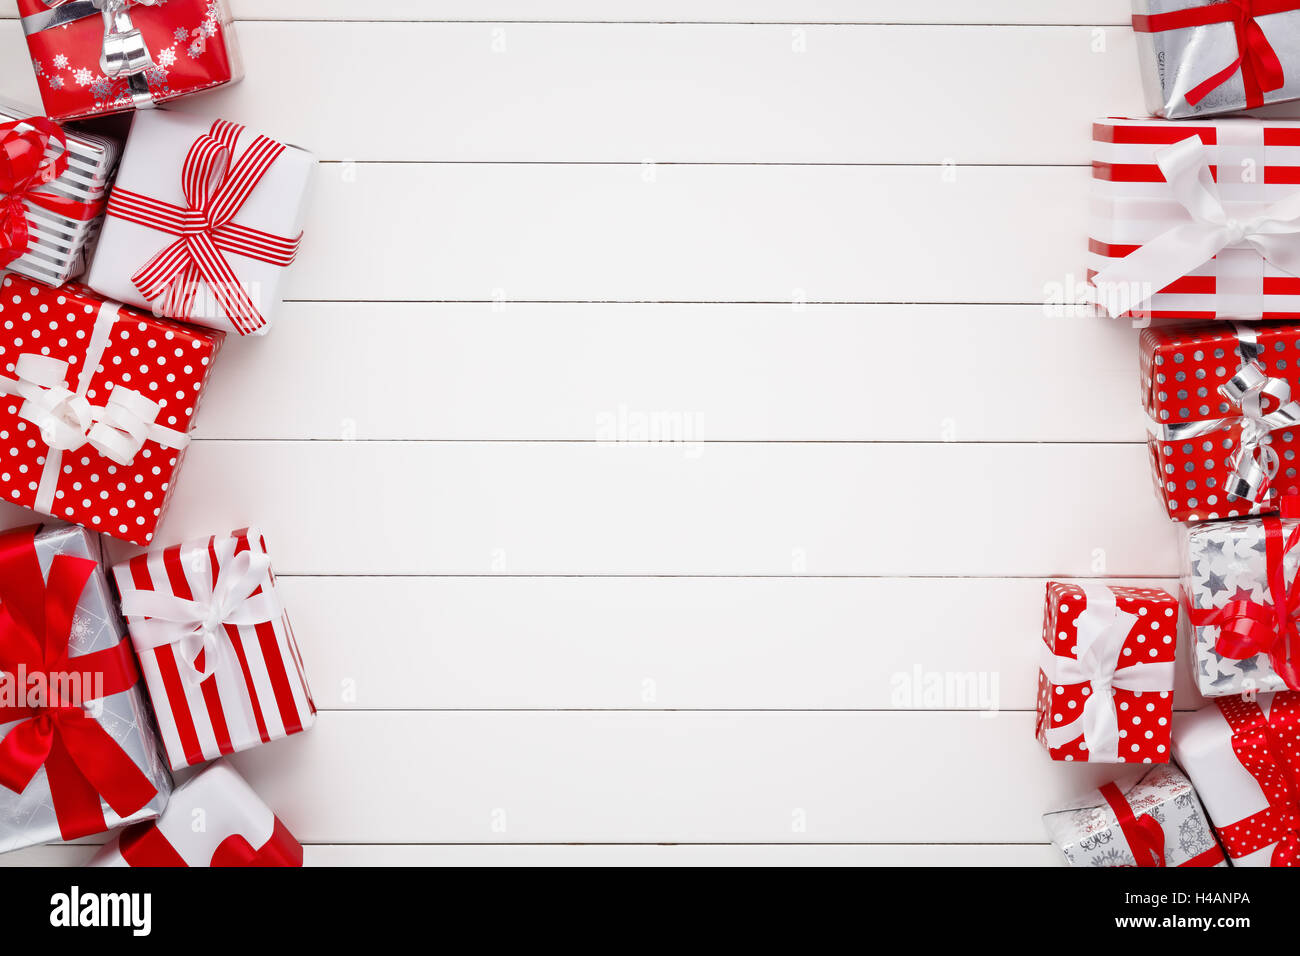 Cajas de Regalo de navidad en placa de madera blanca Foto de stock